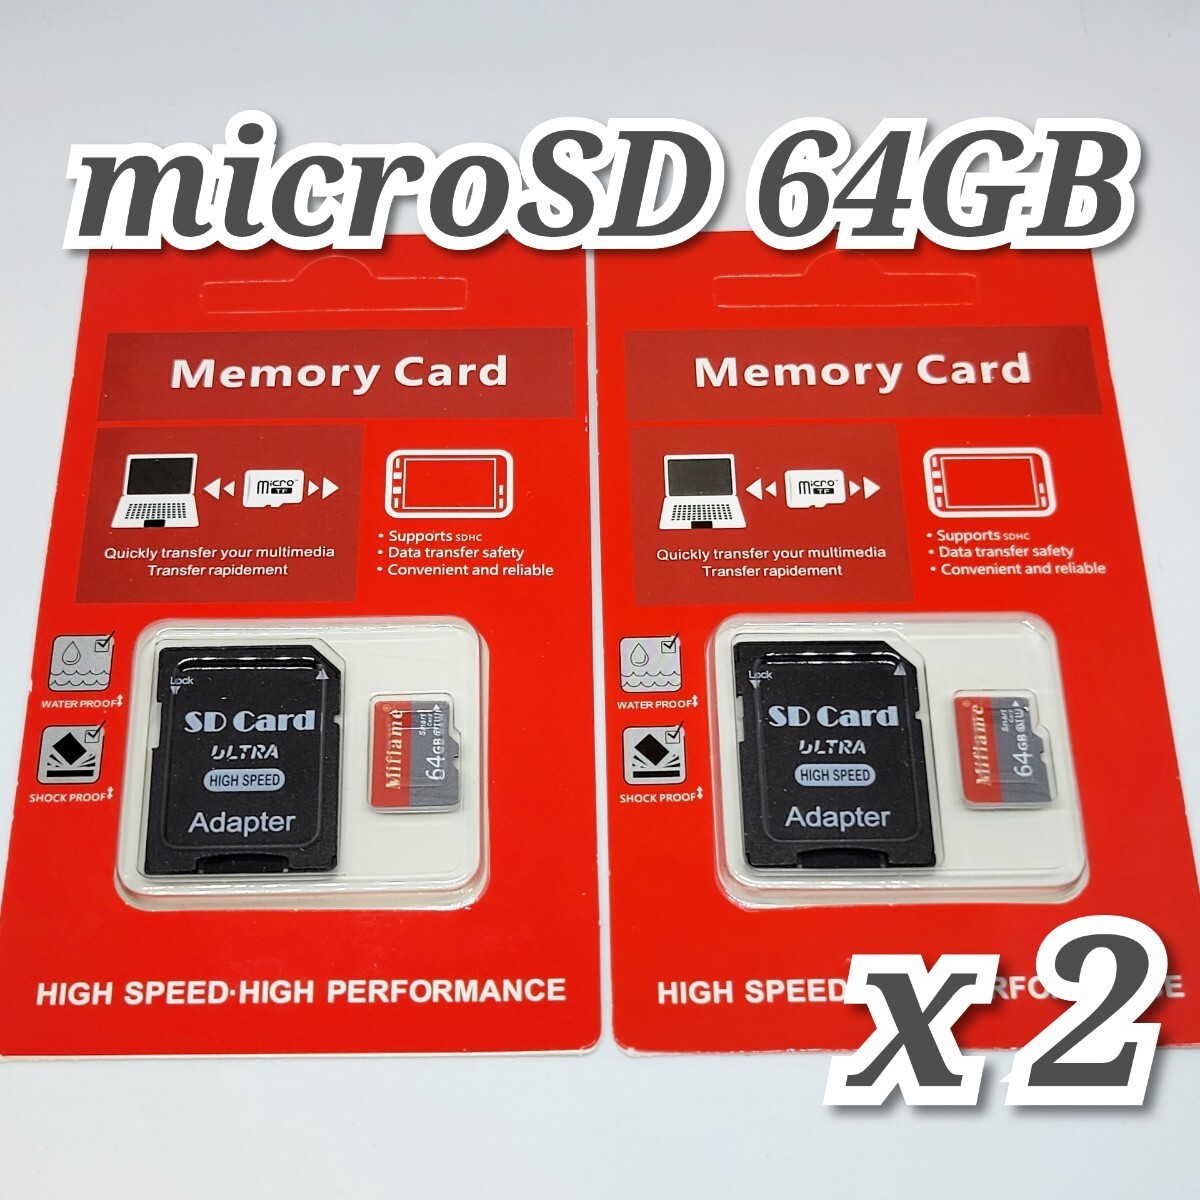 【送料無料】マイクロSDカード 64GB 2枚 class10 2個 microSD microSDXC マイクロSD 高速 MIFLAME 64GB RED-GRAY_画像1